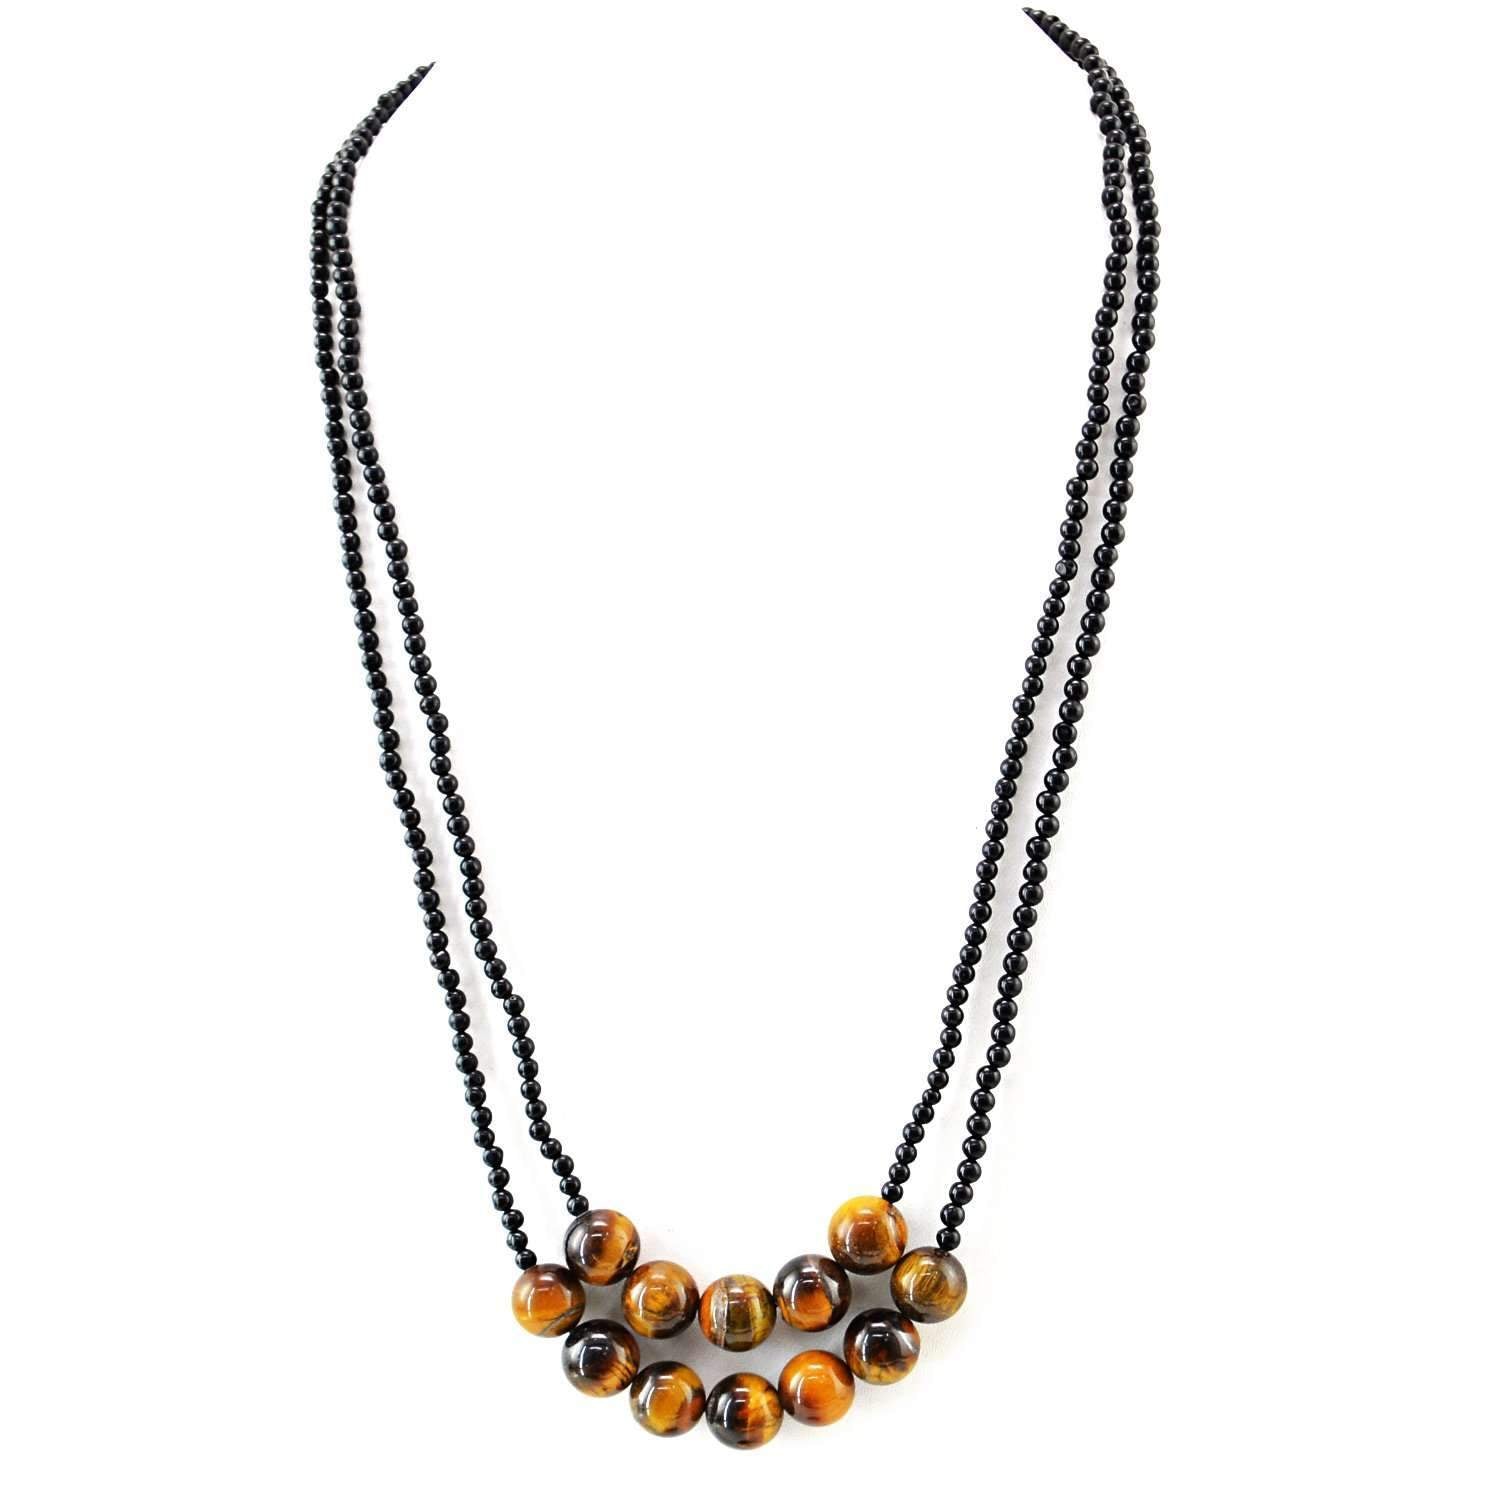 gemsmore:2 Strand Black Spinel & Golden Tiger Eye Necklace Natural Round Shape Beads